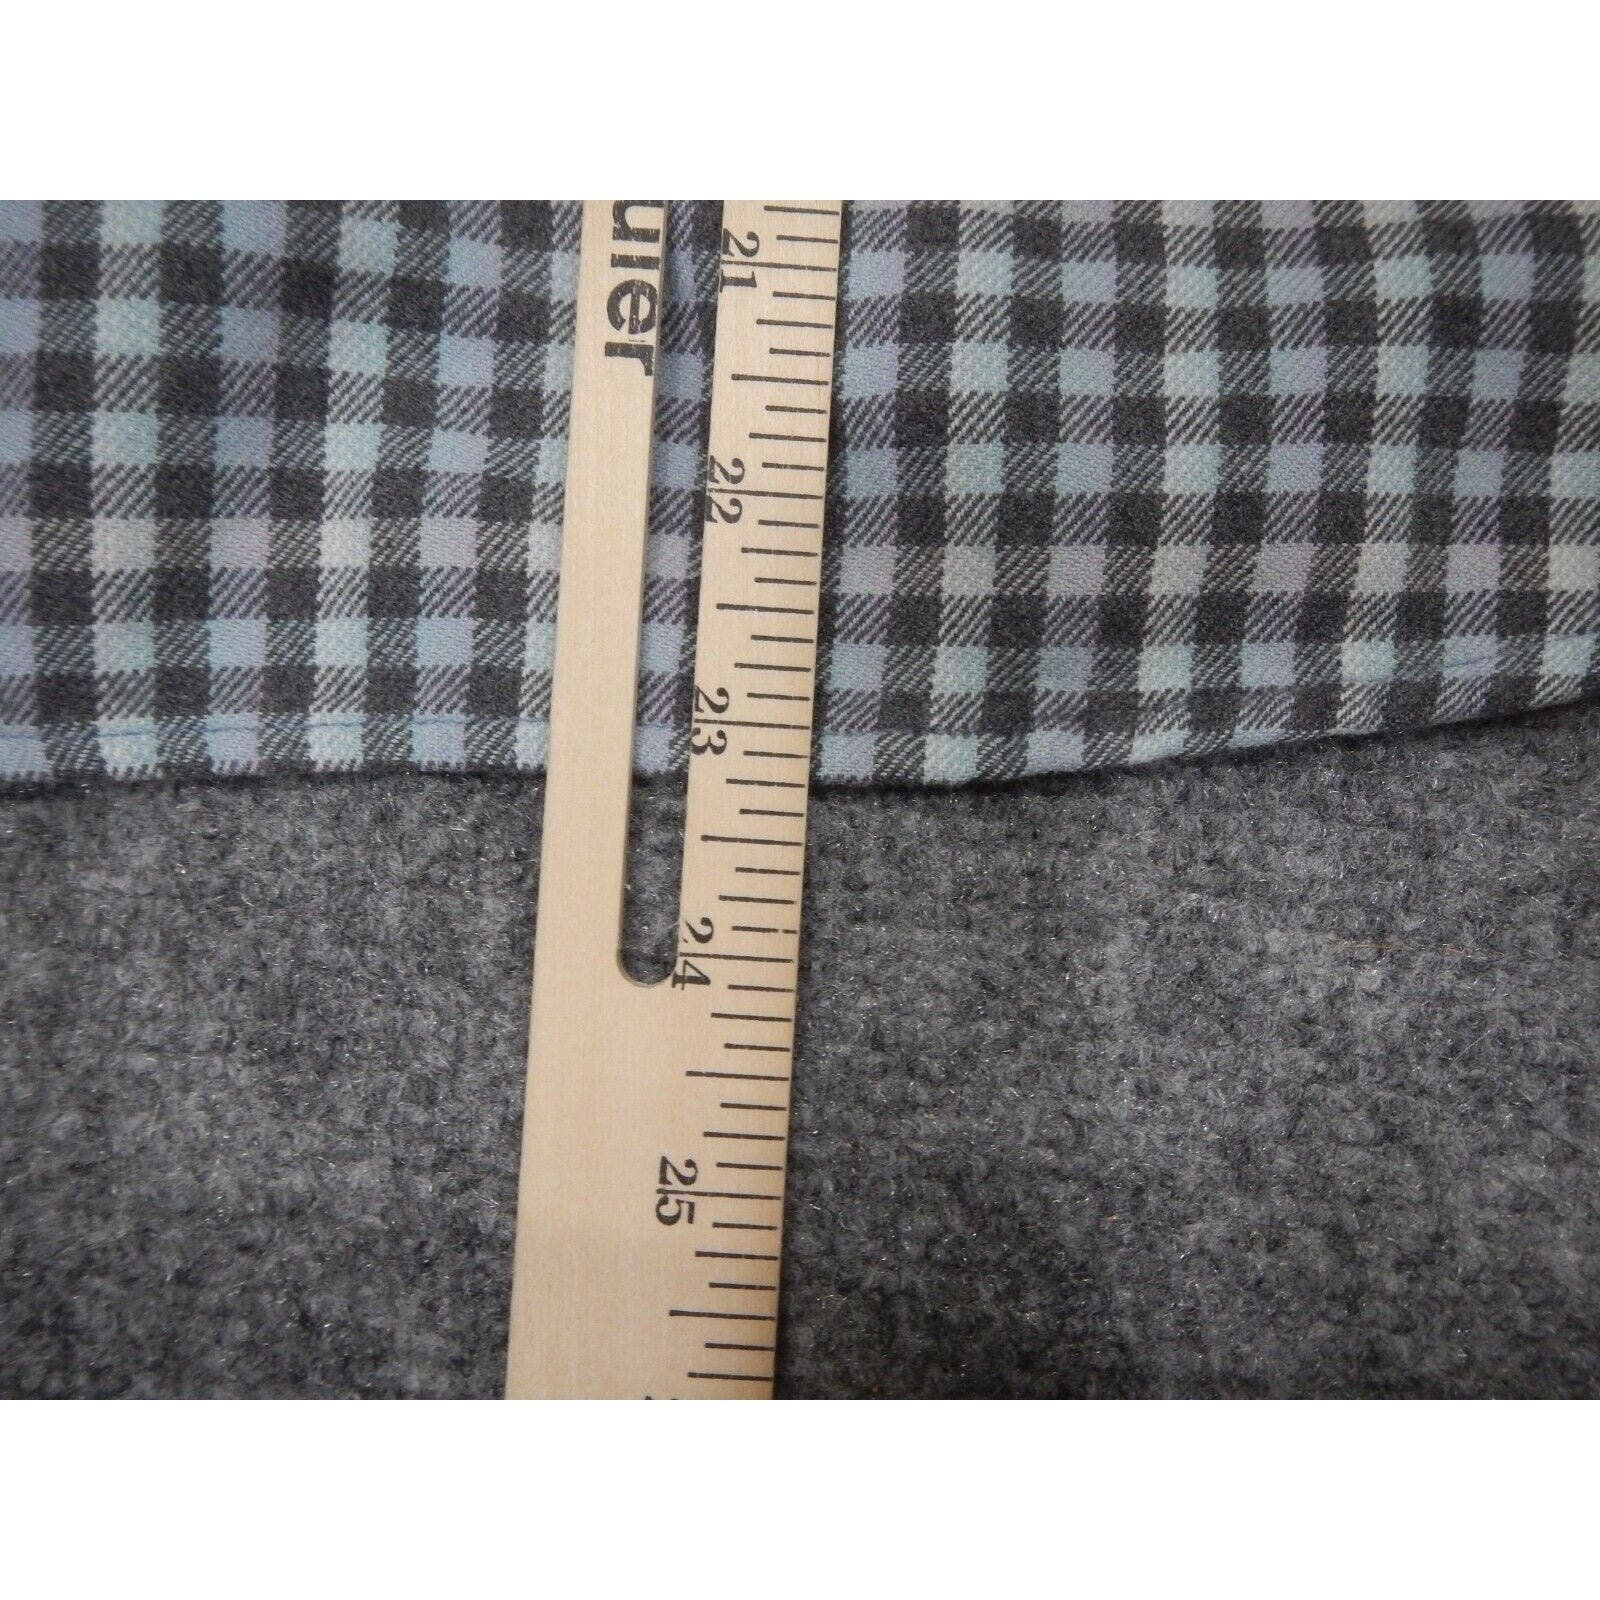 The Best Seller Woolrich Flannel Shirt Womens Medium Gray Blue Plaid Button Up Long Sleeve GJG51629k Wholesale